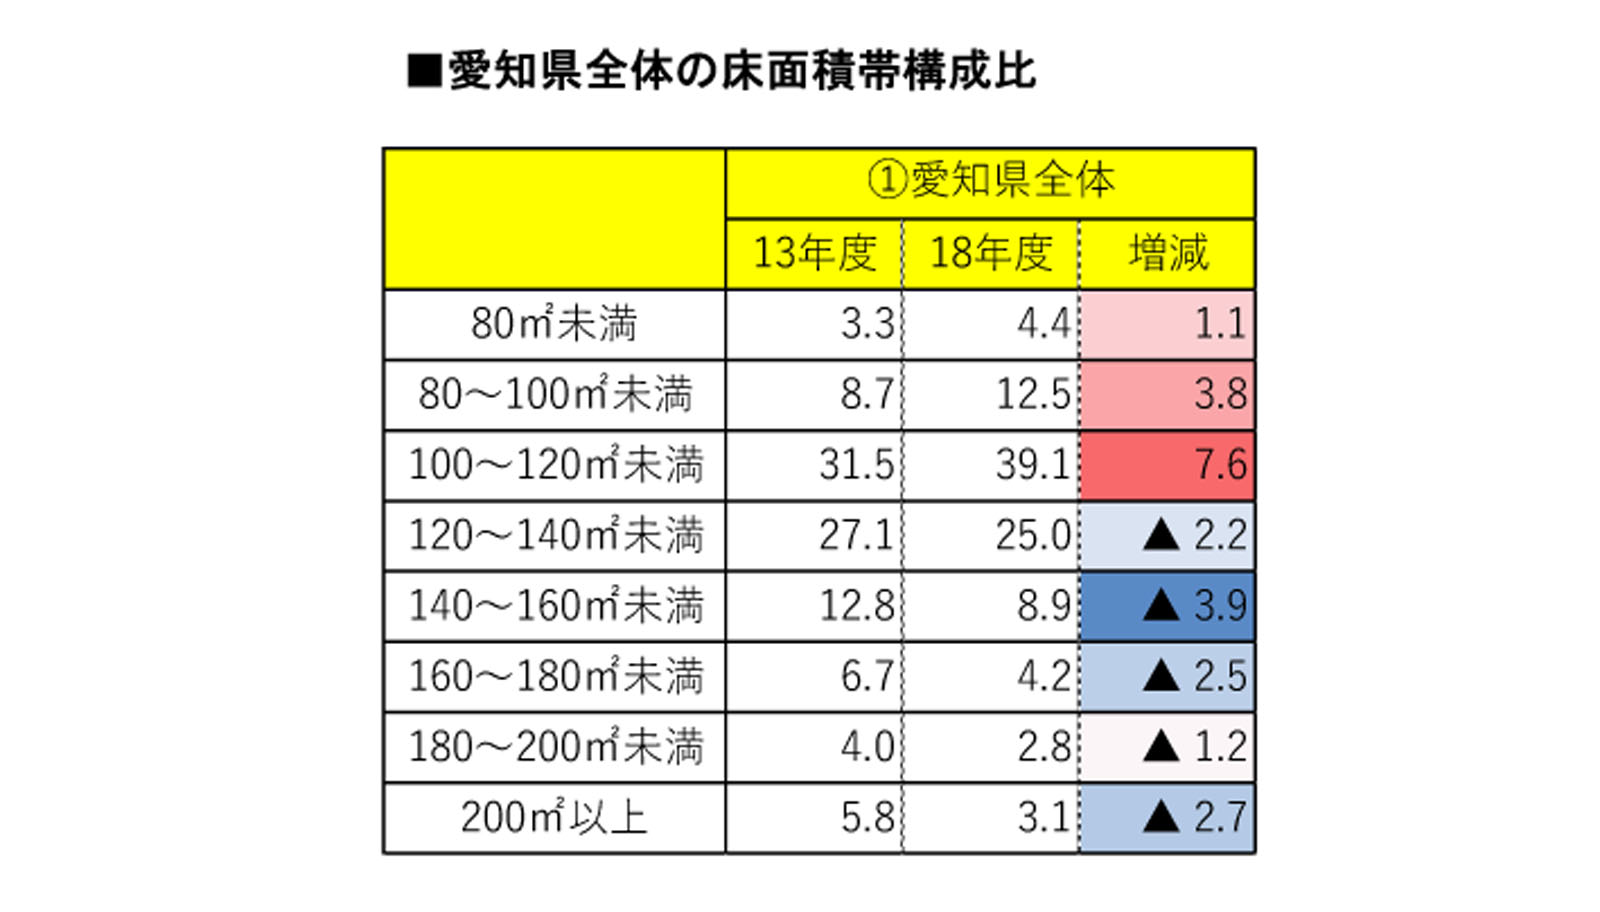 愛知県全体の床面積帯構成比